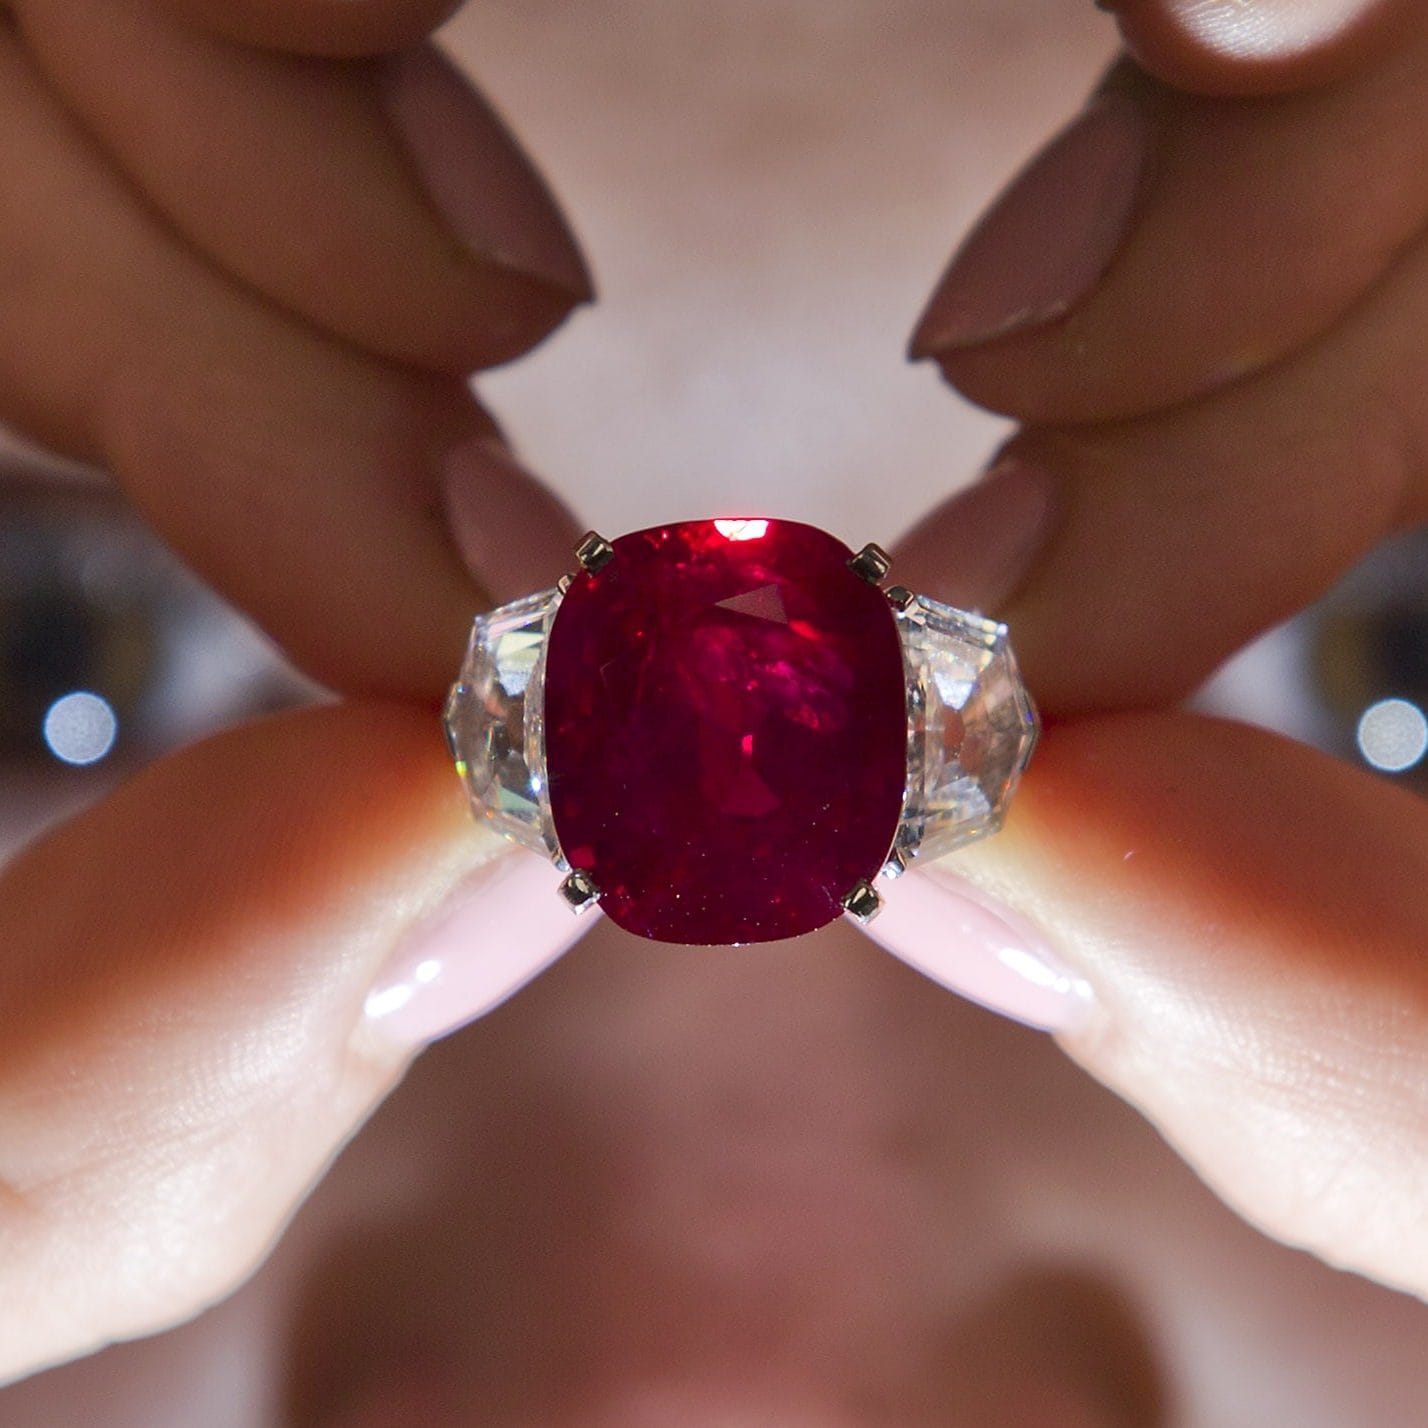 Prsten Cartier Sunrise s rubinom Postigavši ​​impresivnih 19,6 milijuna funti na aukciji 2019., ovaj krvavocrveni dragulj doista je jedinstven i jedinstven. S prekrasnim okvirom od dijamanata koji prati ogroman i privlačan dragulj. U ovom slučaju, rijetkost komada i prekrasan dragulj dovode do tako značajne cijene – ove vrste rubina toliko su tražene da će i njihova cijena s vremenom samo rasti.